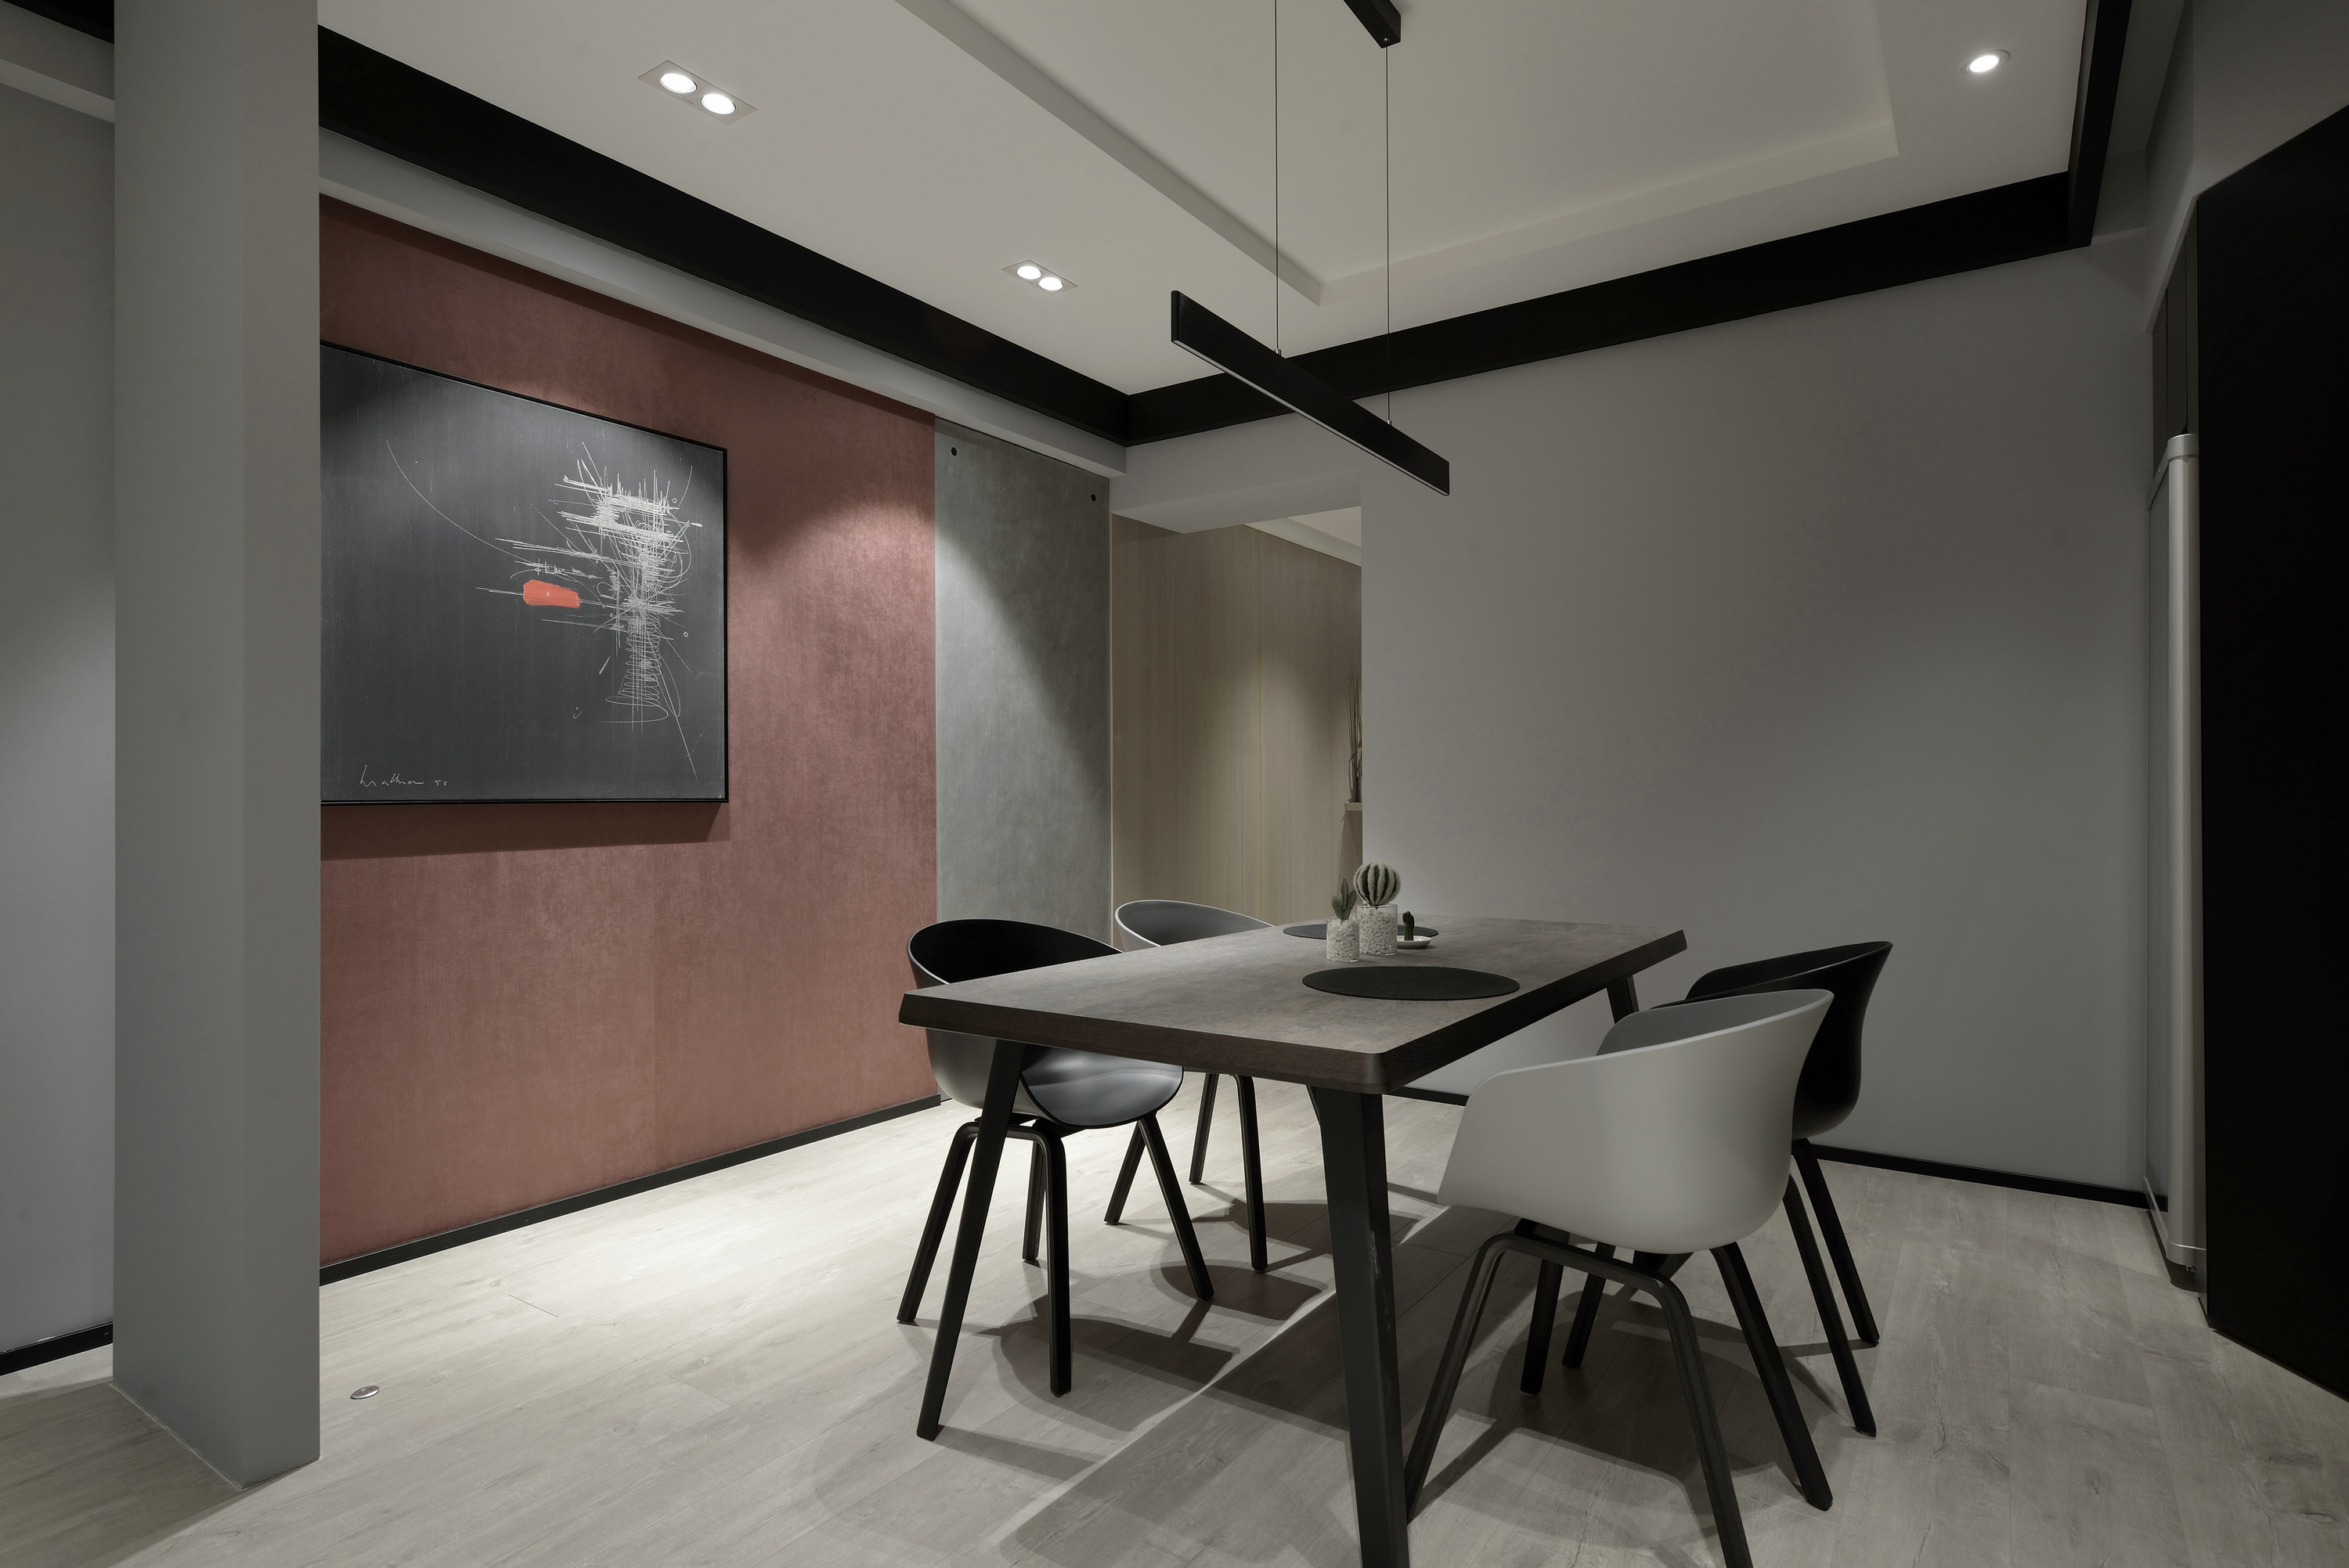 餐厅空间的质感与素朴家具巧妙融合，营造出一个雅致的用餐氛围。